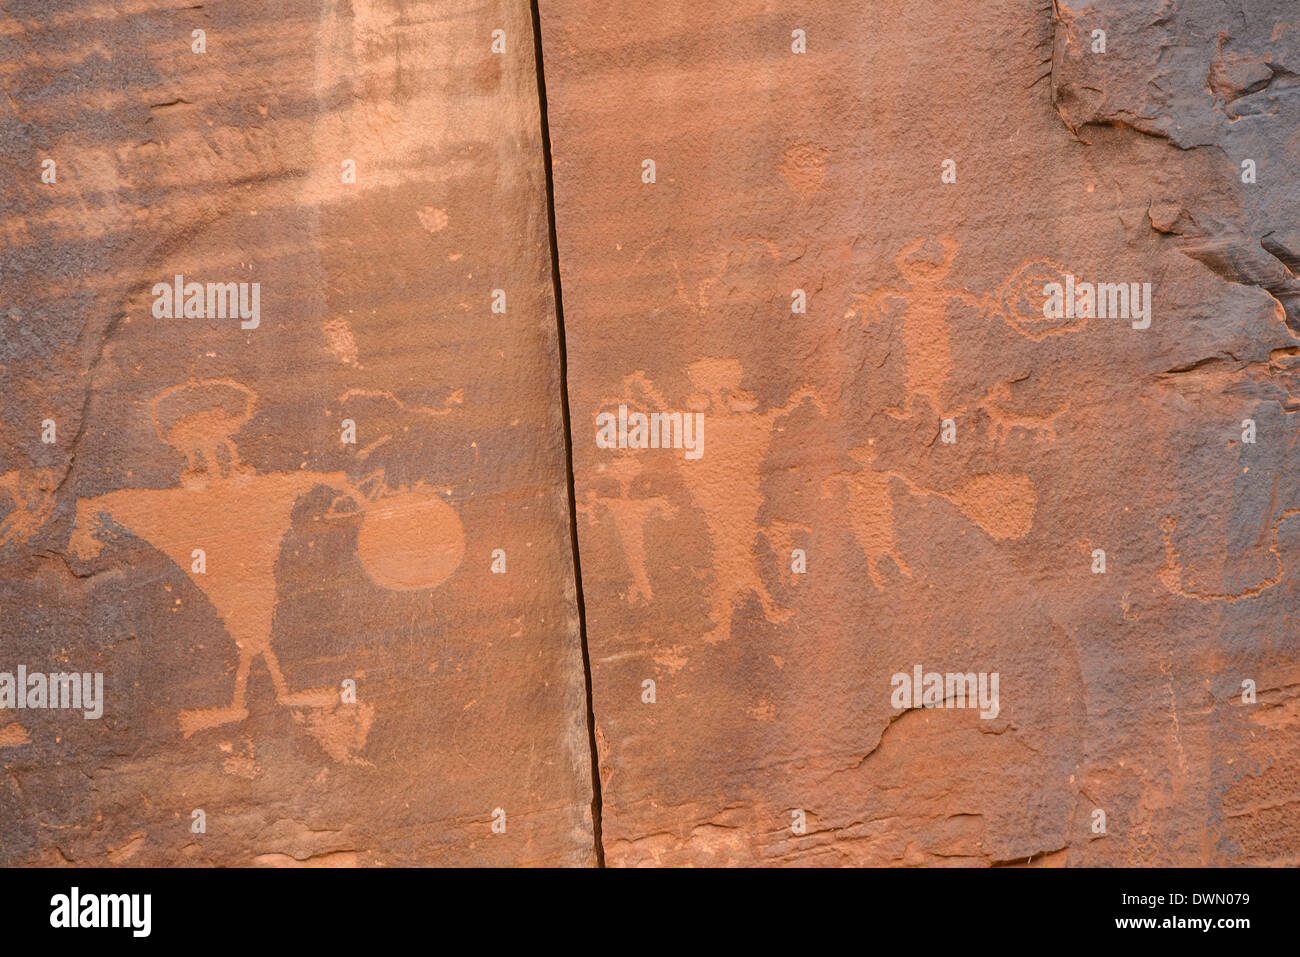 Indian Pictographs, Potash Road, in der Nähe von Moab, Utah, Vereinigte Staaten von Amerika, Nordamerika Stockfoto